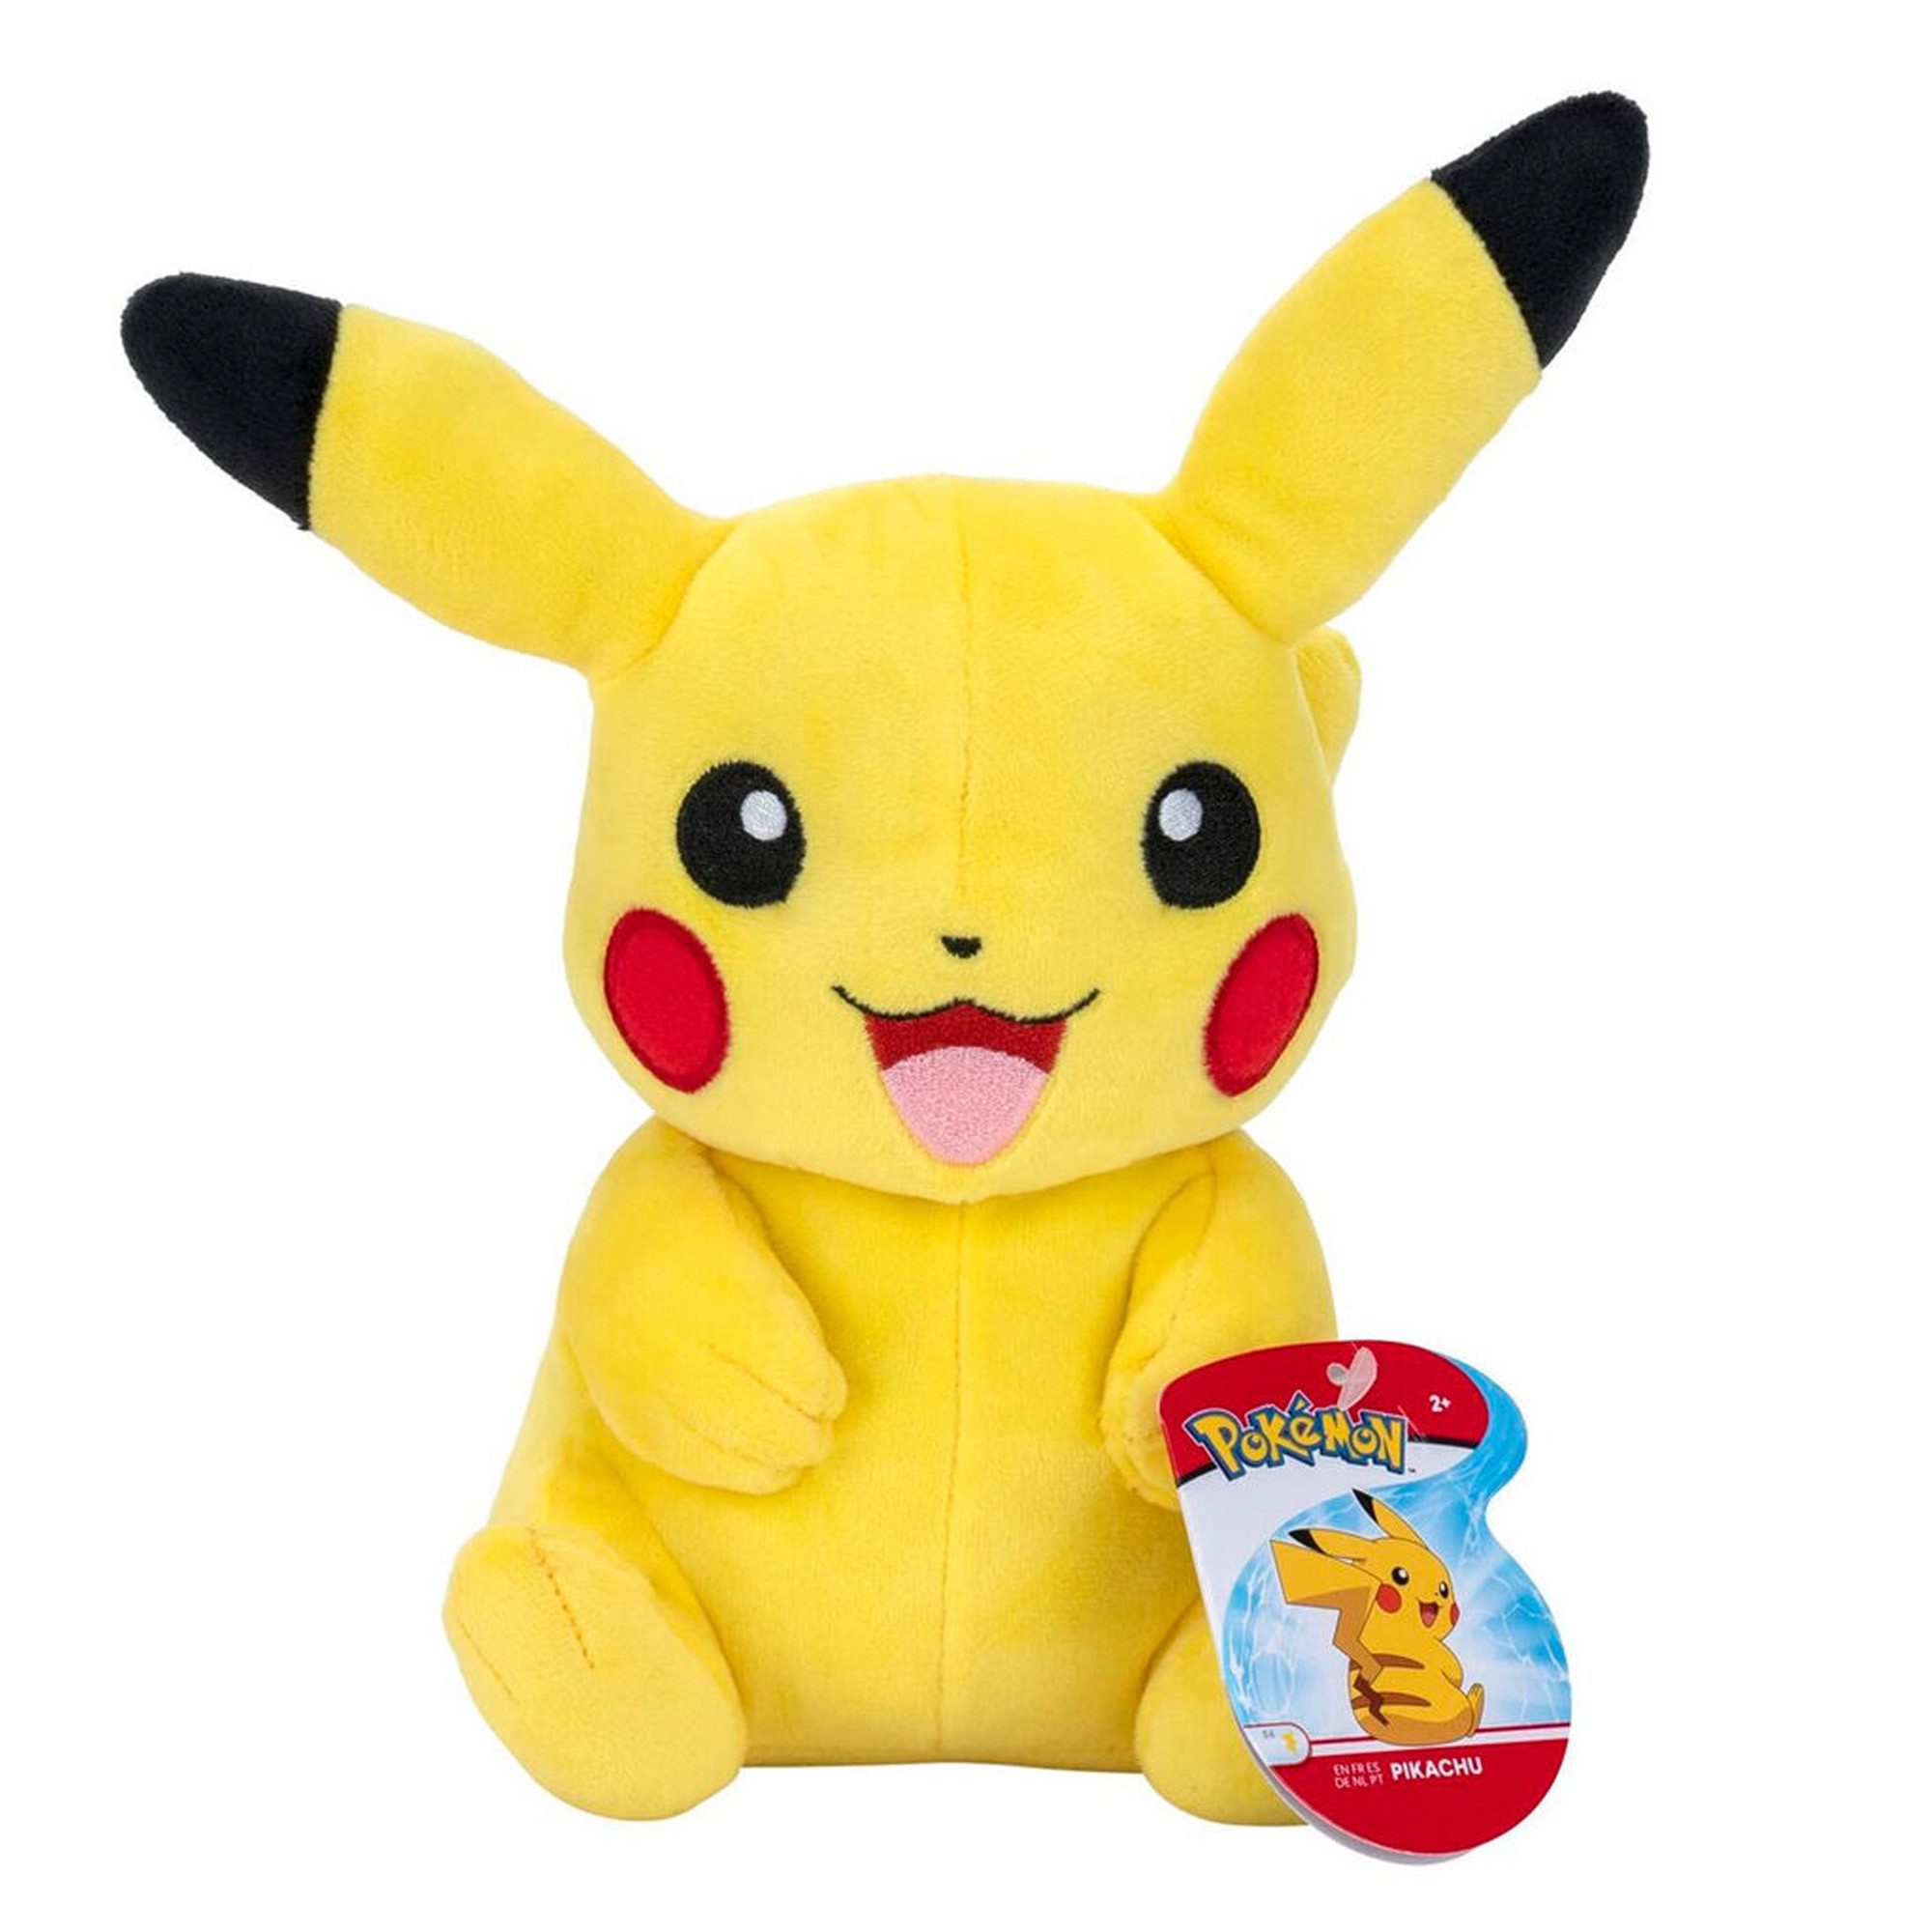 Jazwares Plüschfigur Pikachu sitzend (20 cm) - Pokémon